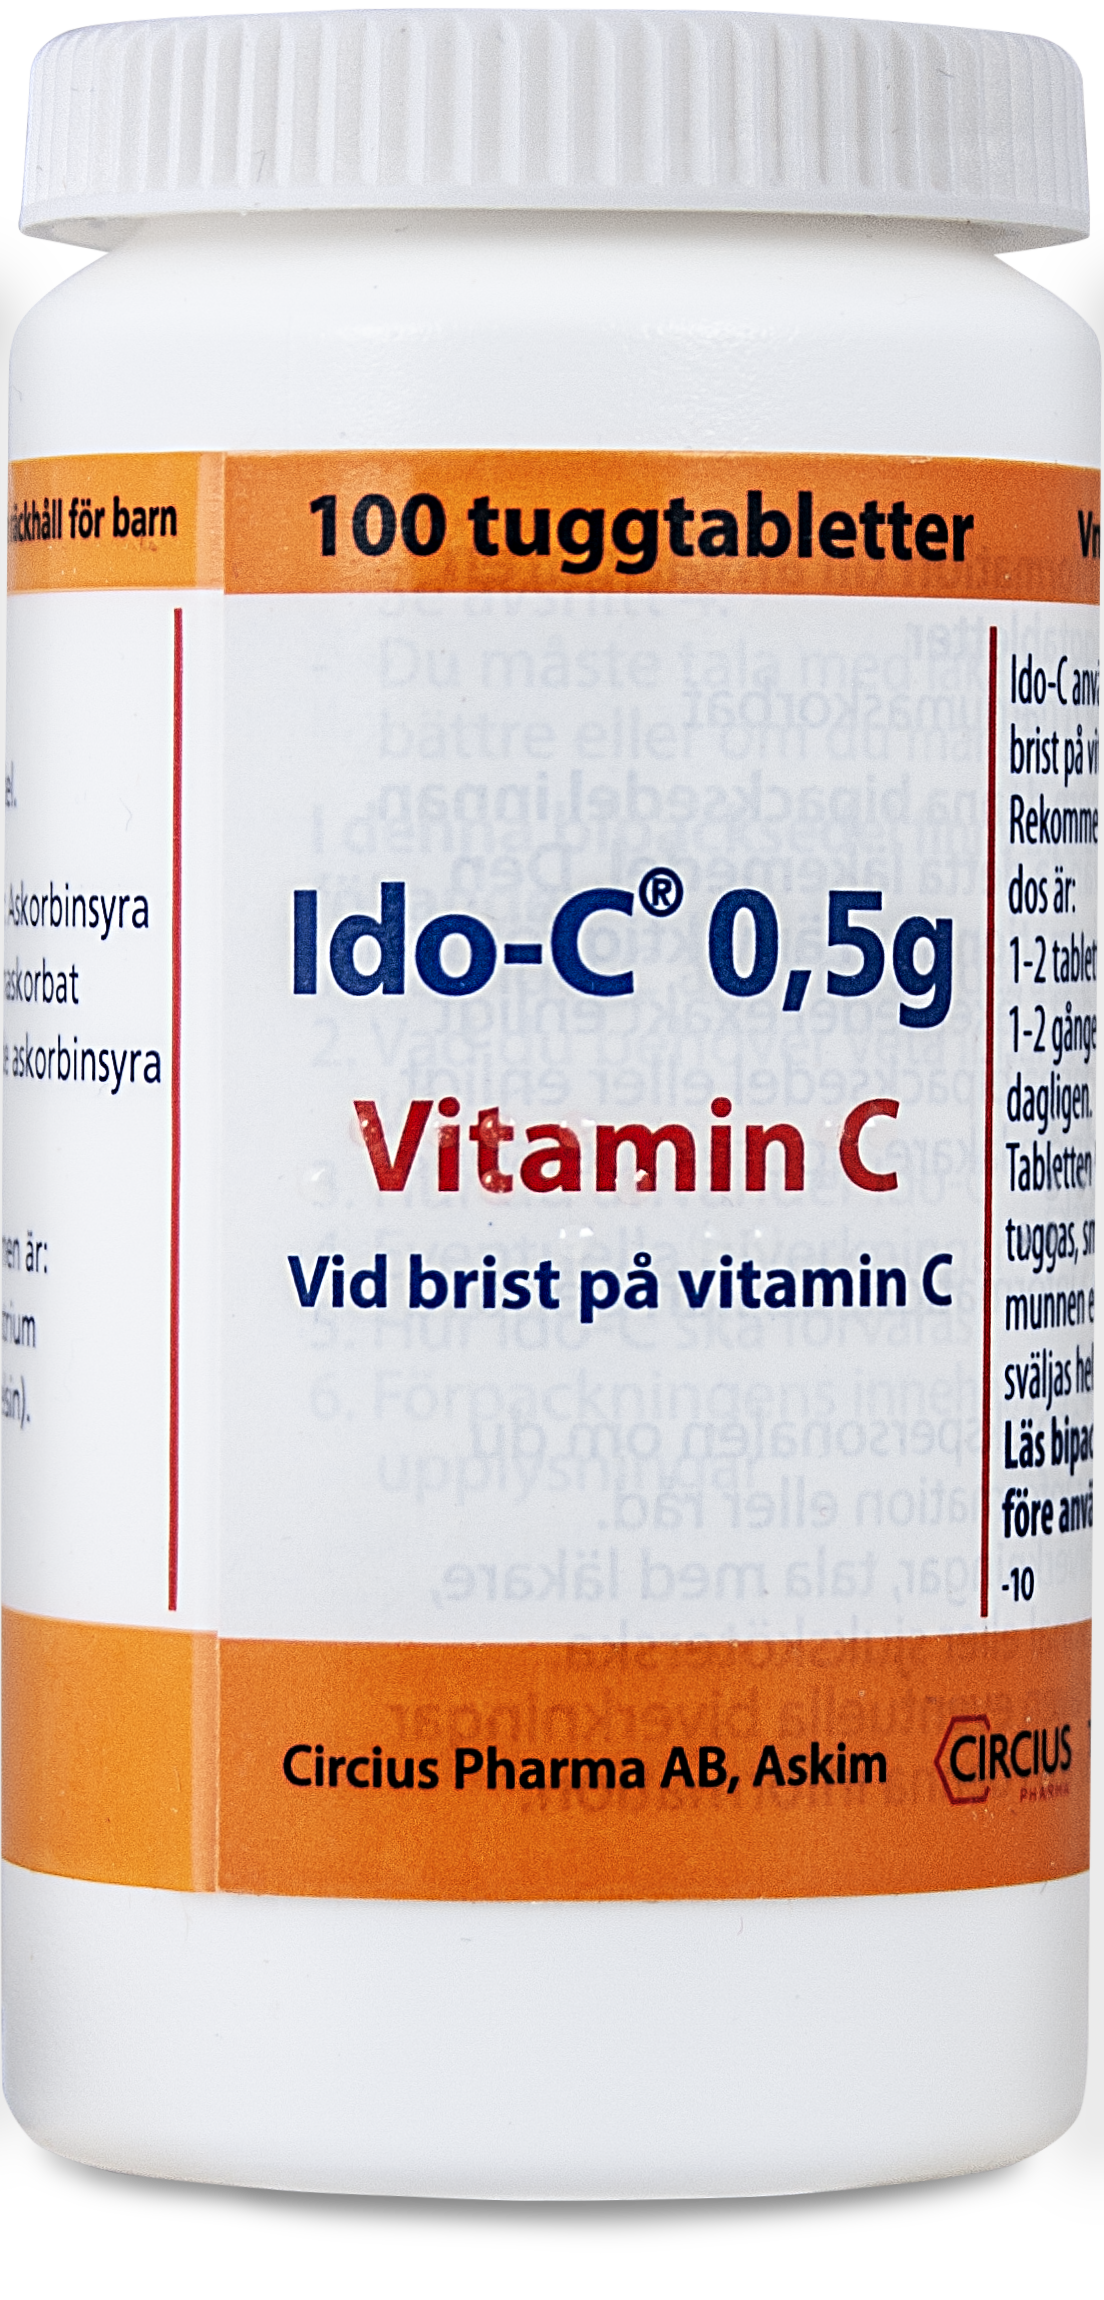 Ido-C 0,5 g Vitamin C 100 tuggtabletter